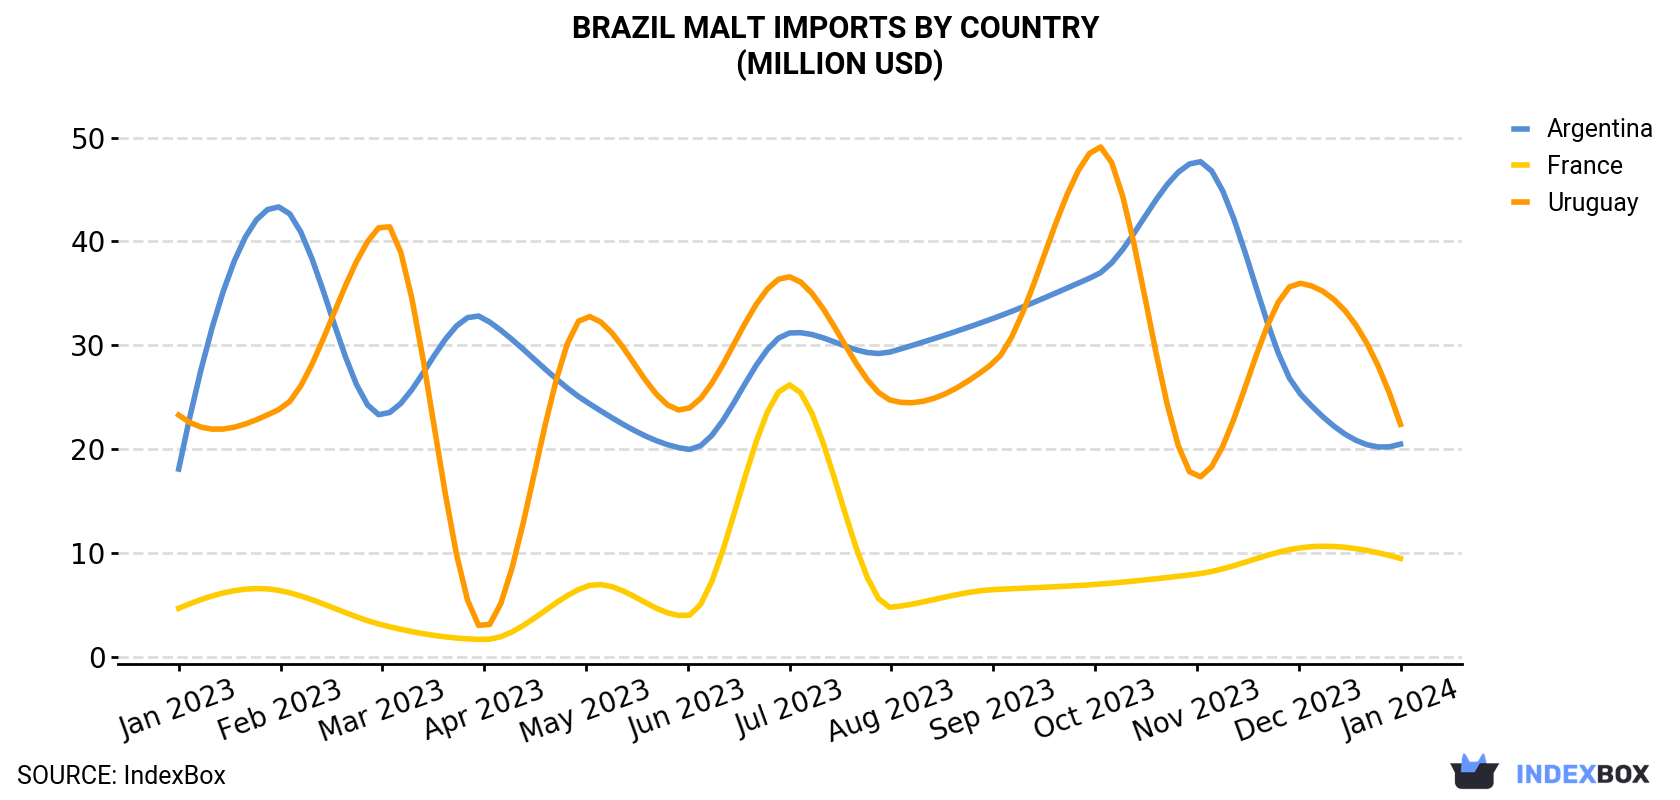 Brazil Malt Imports By Country (Million USD)